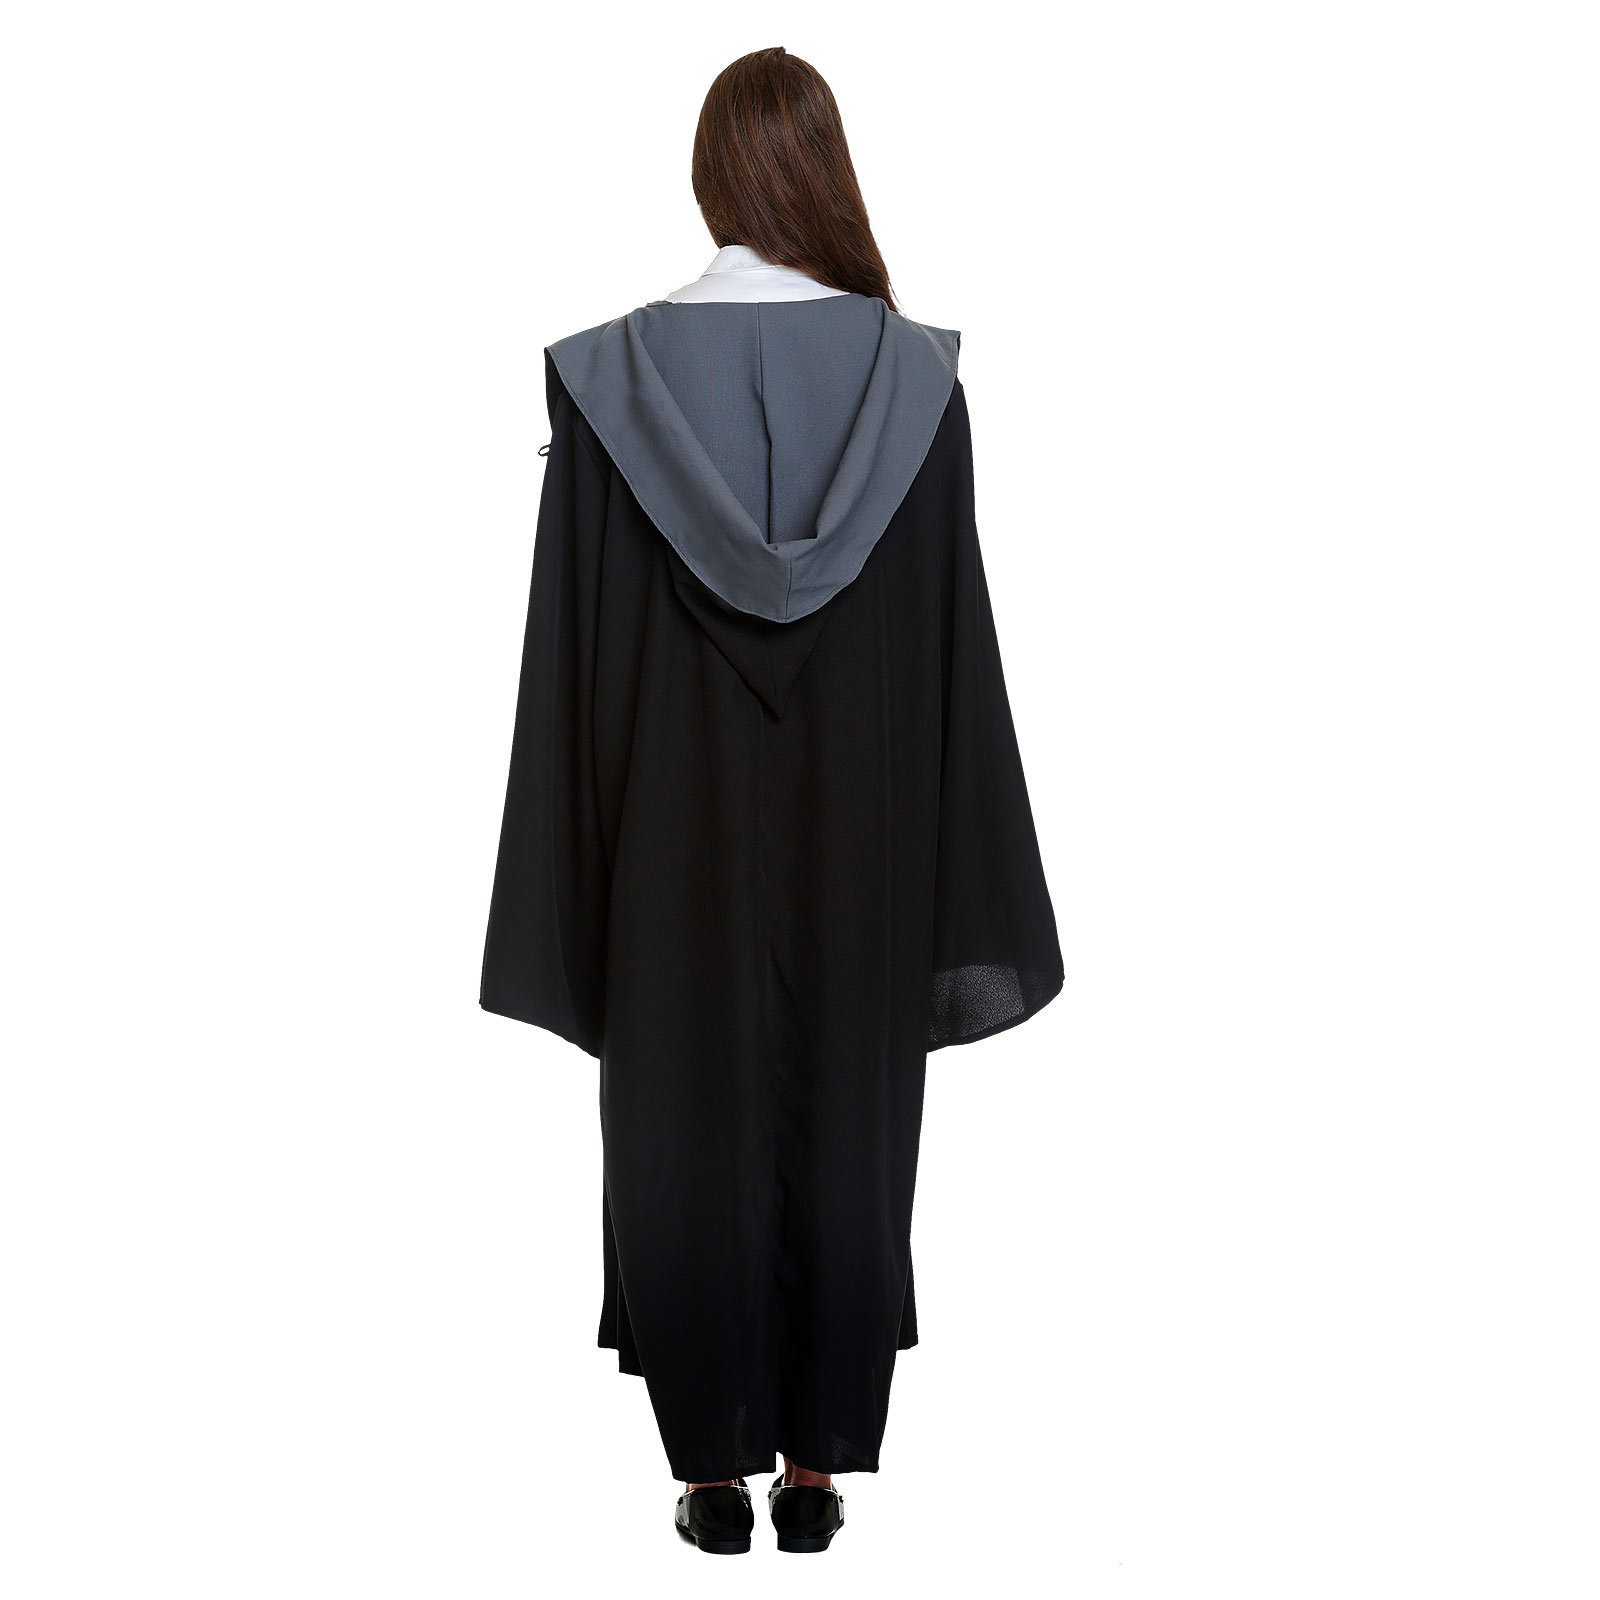 Robe de Costume de Sorcier avec Capuche pour les Fans de Harry Potter